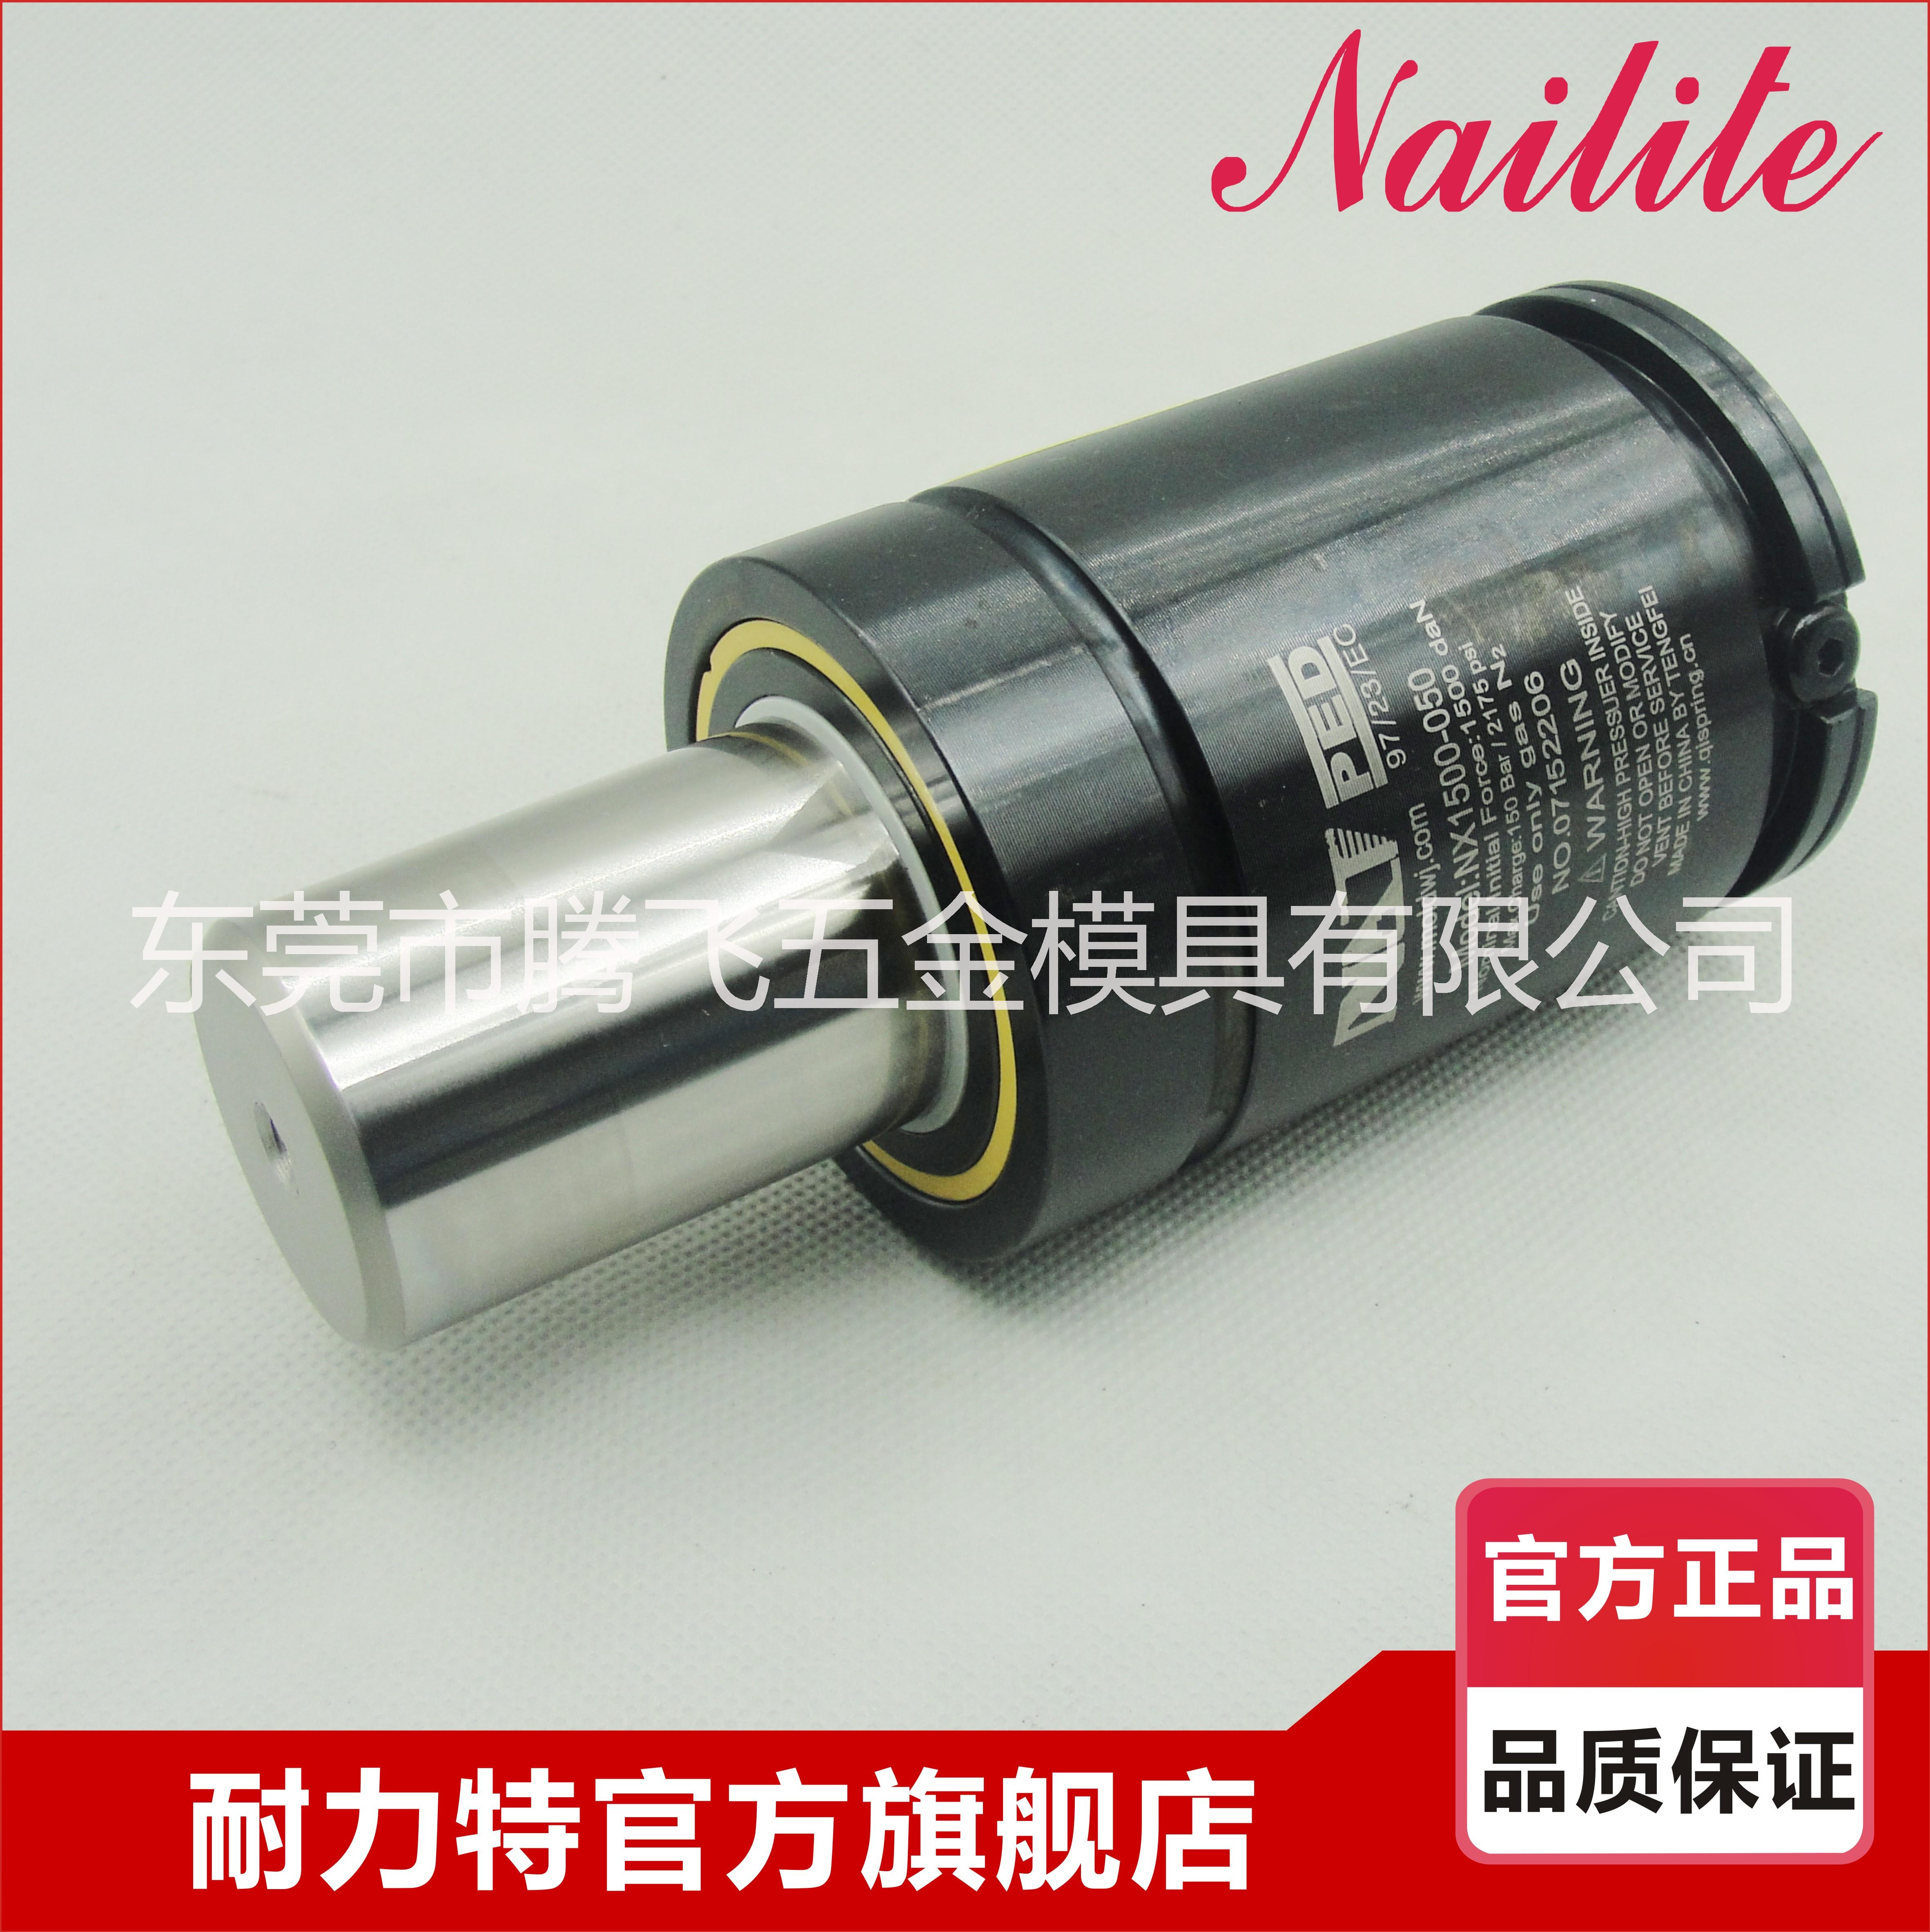 耐力特品牌 品质保证 安全可靠 全国联保 规格NX750-50 氮气弹簧图片